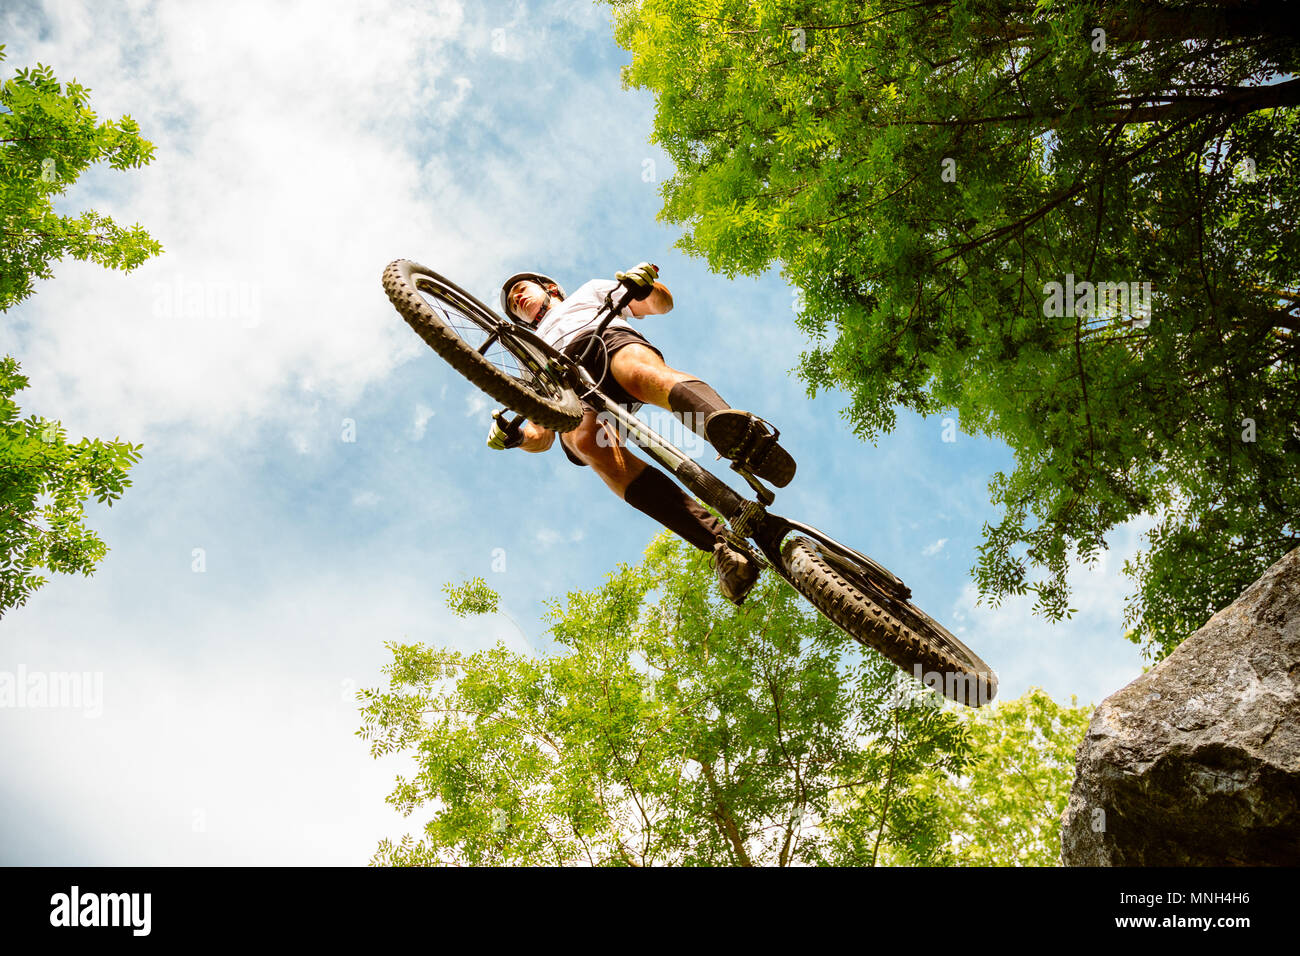 Junge Radfahrer fliegen mit seinem Fahrrad von einem Felsen im Wald. Extreme Low Angle View Stockfoto